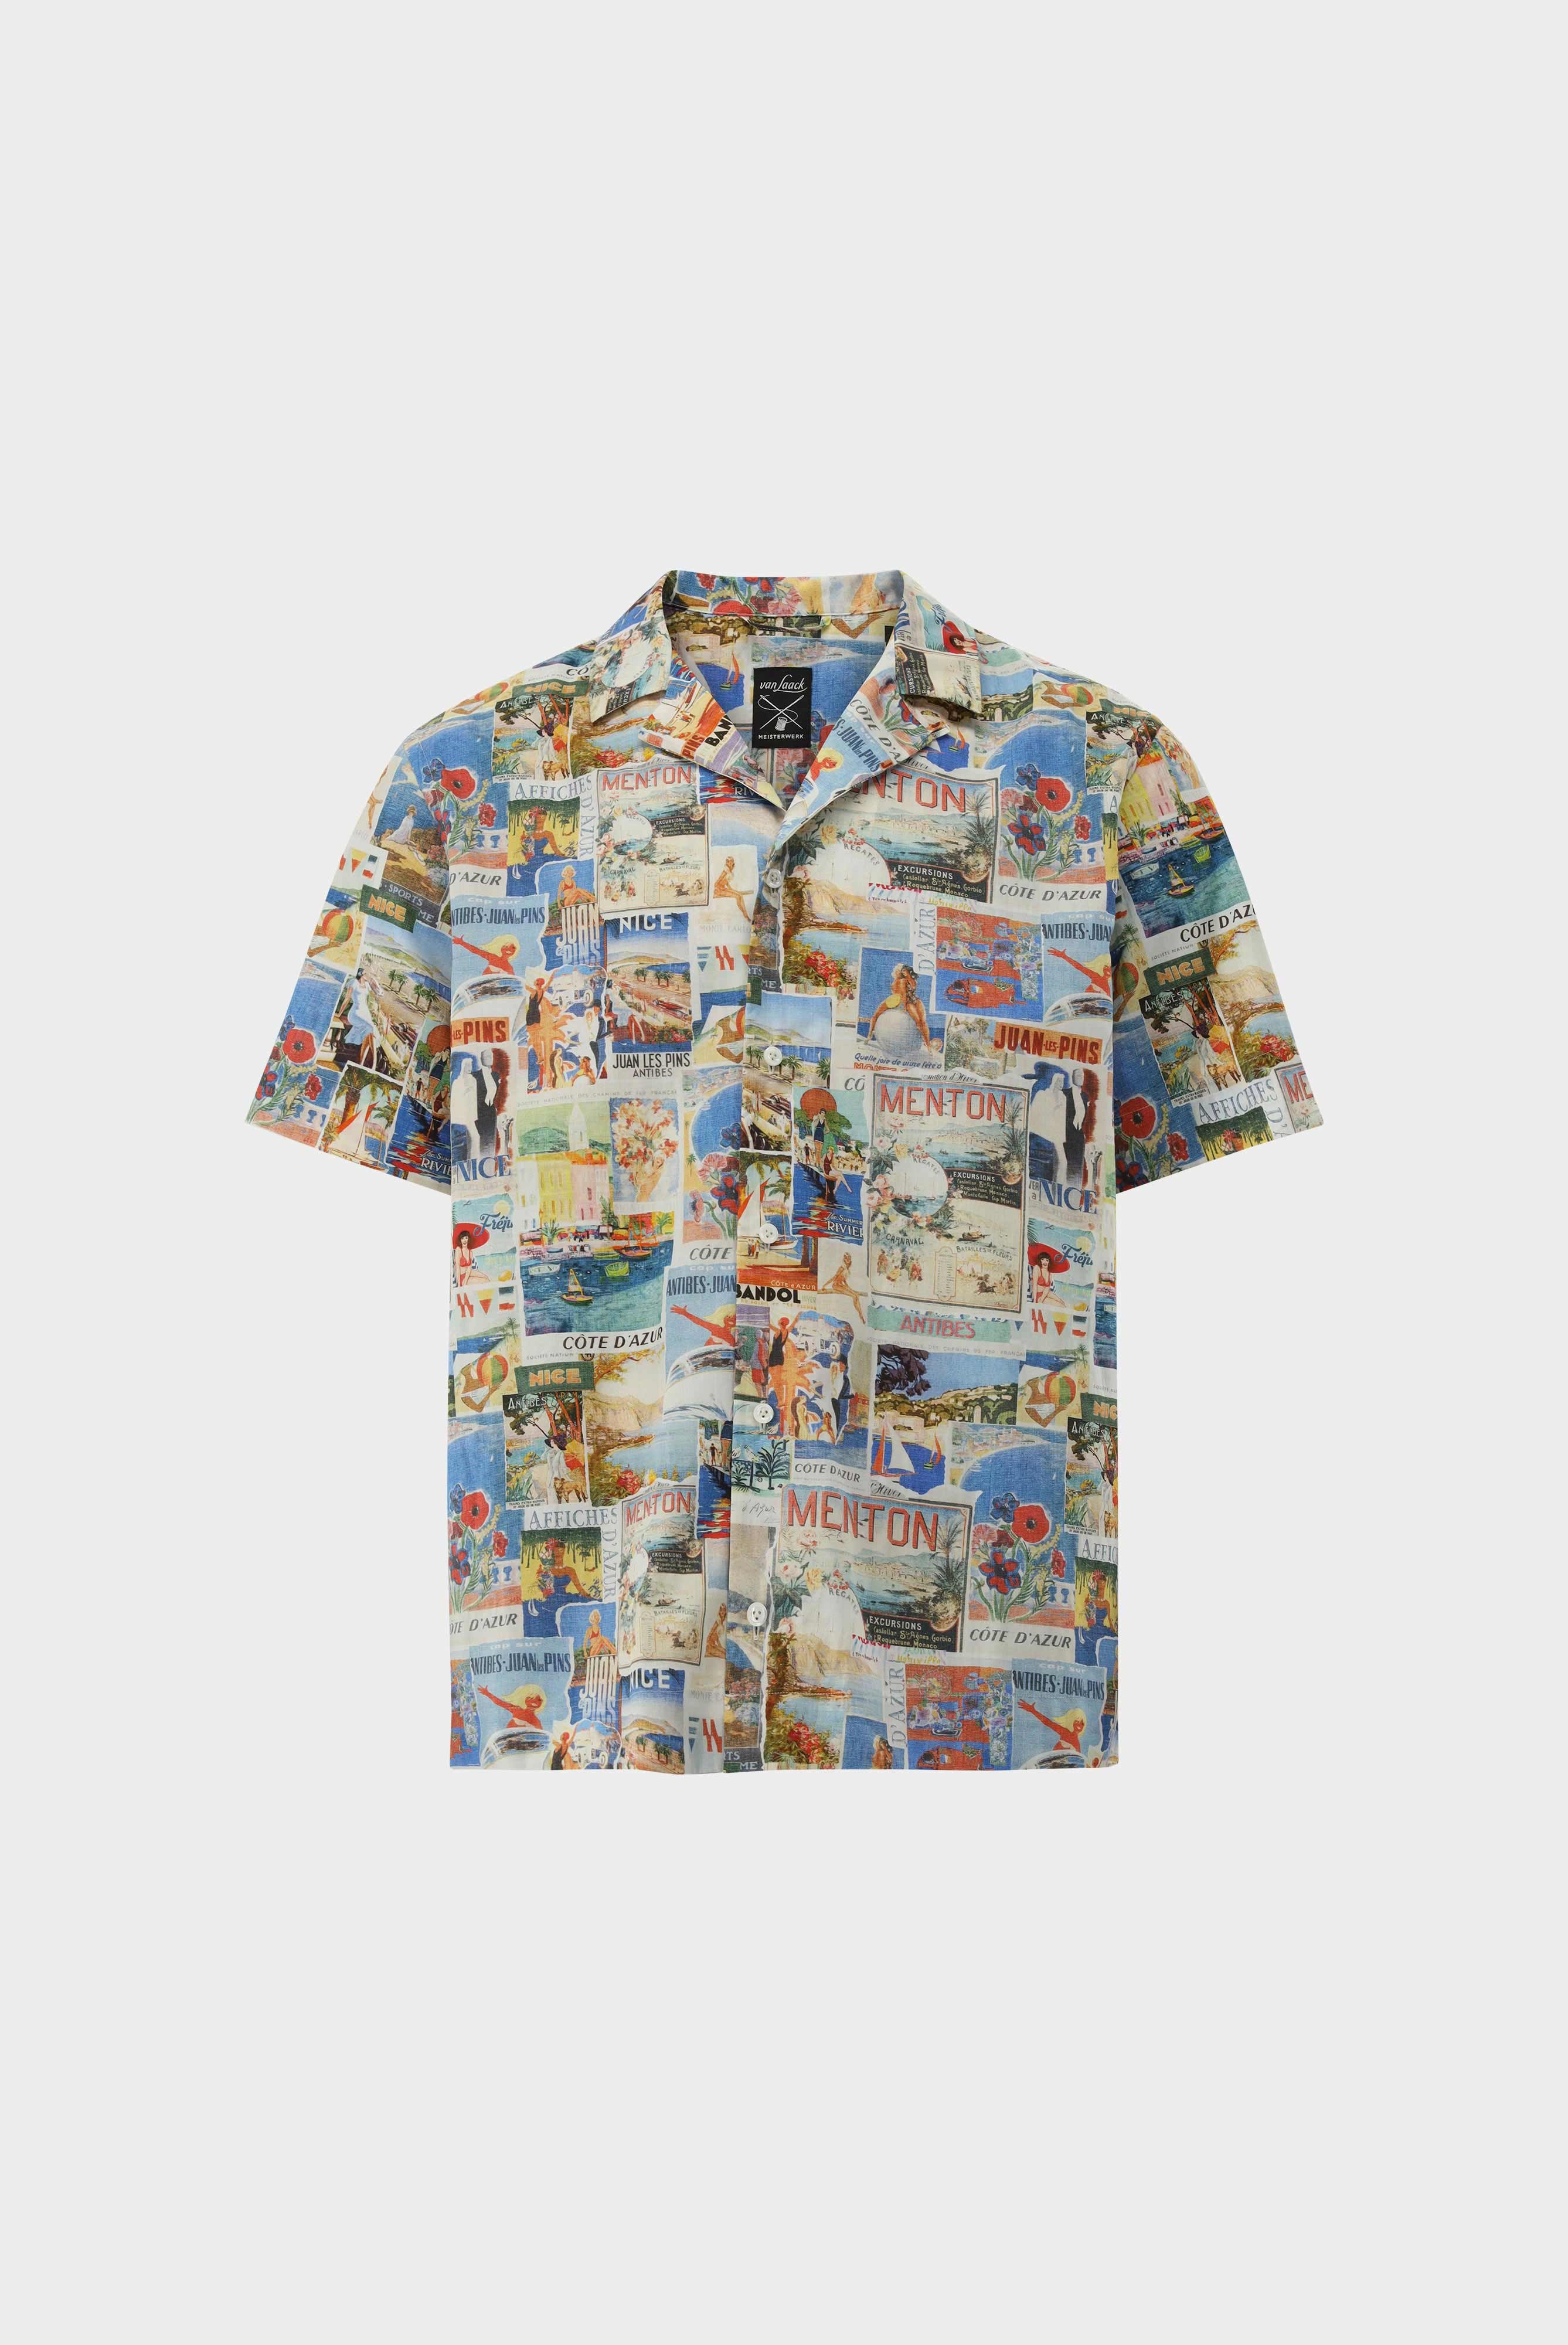 Casual Shirts+Printed Short Sleeve Shirt+20.2075.RD.170194.743.S